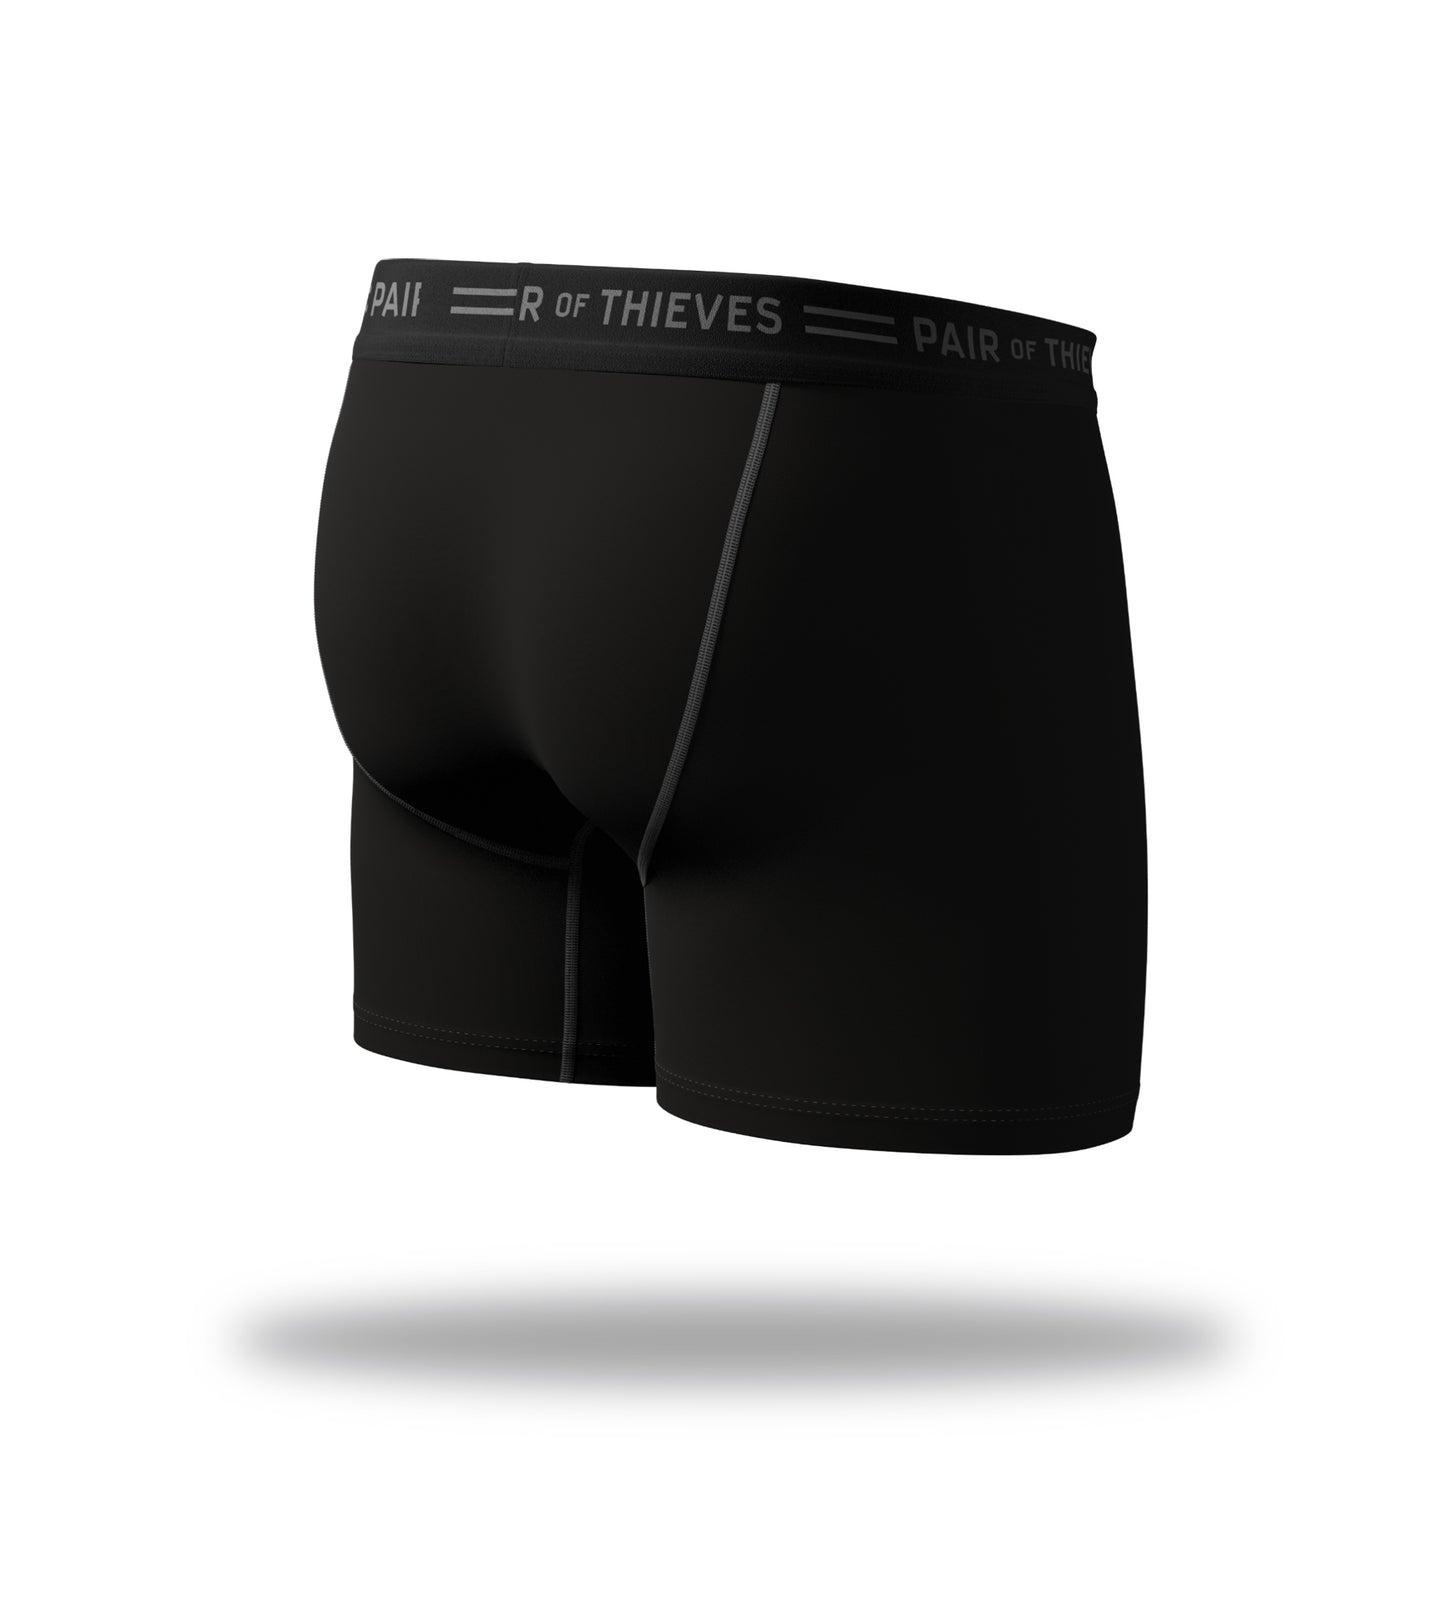 Pair of Thieves men's boxer brief underwear-sz S-1 Pr-black/WHITE  speckled-new